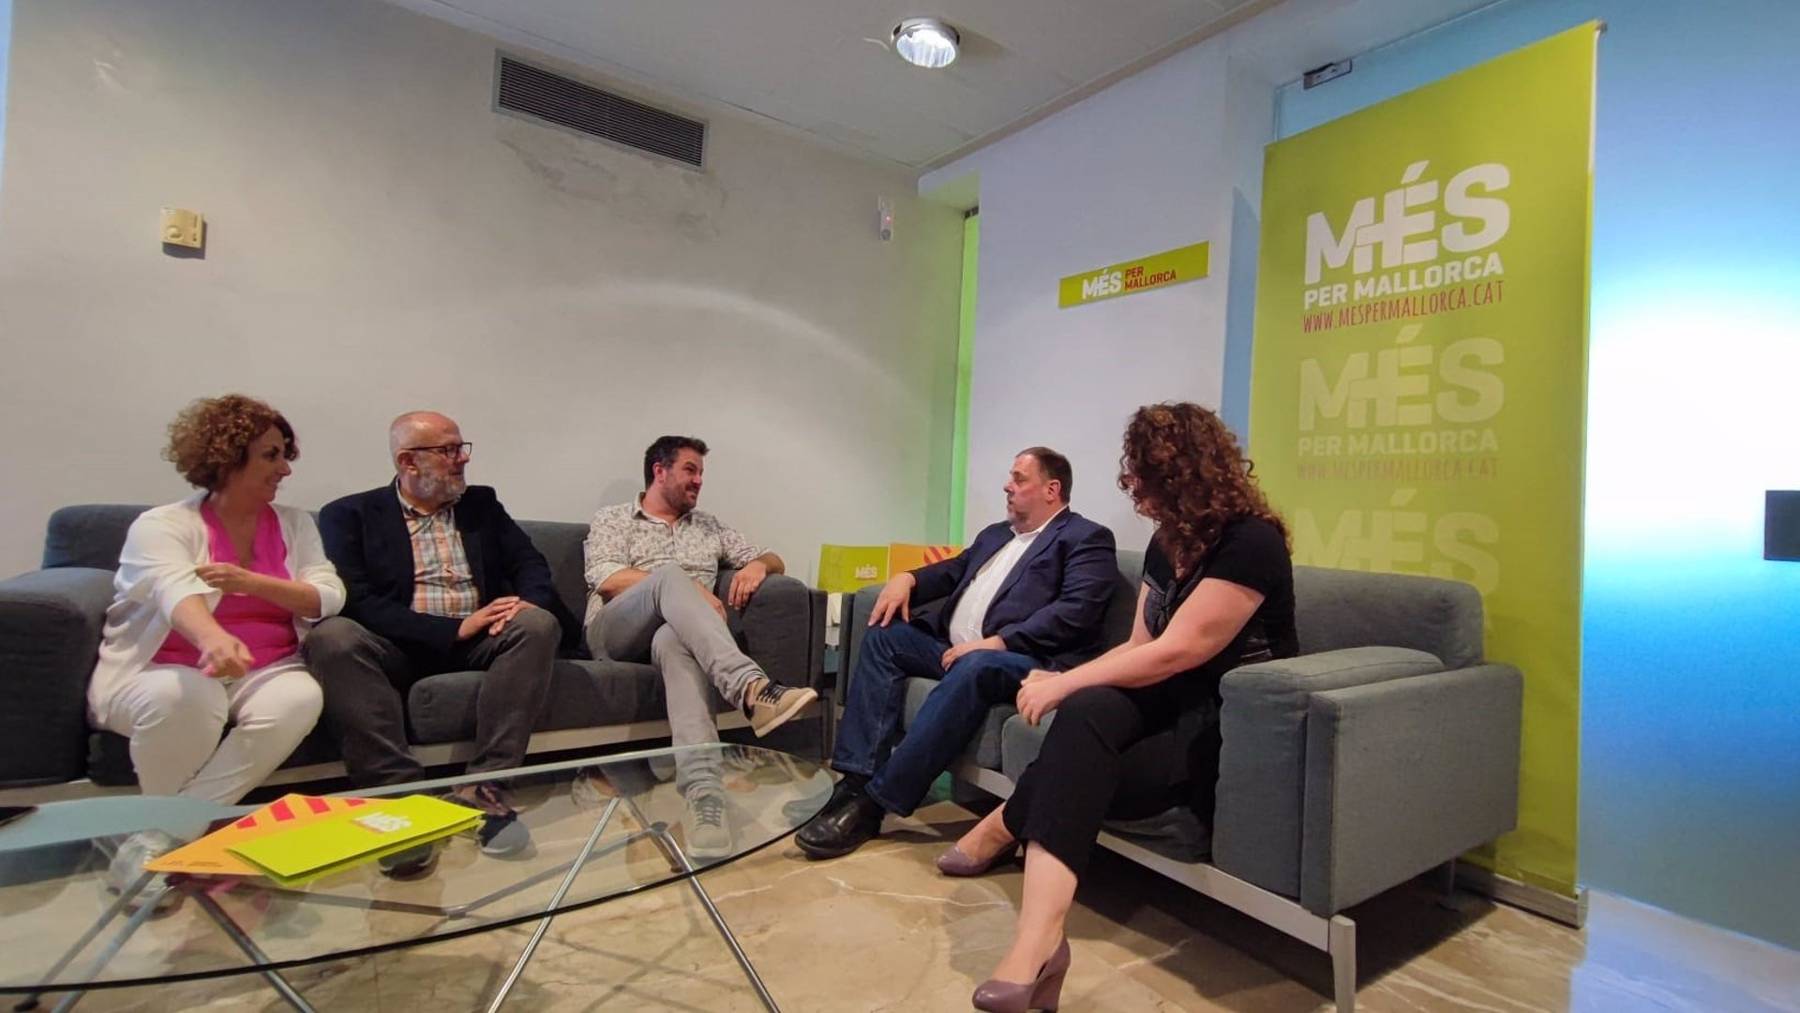 Oriol Junqueras con los dirigentes de Més per Mallorca en unas dependencias del Parlament.